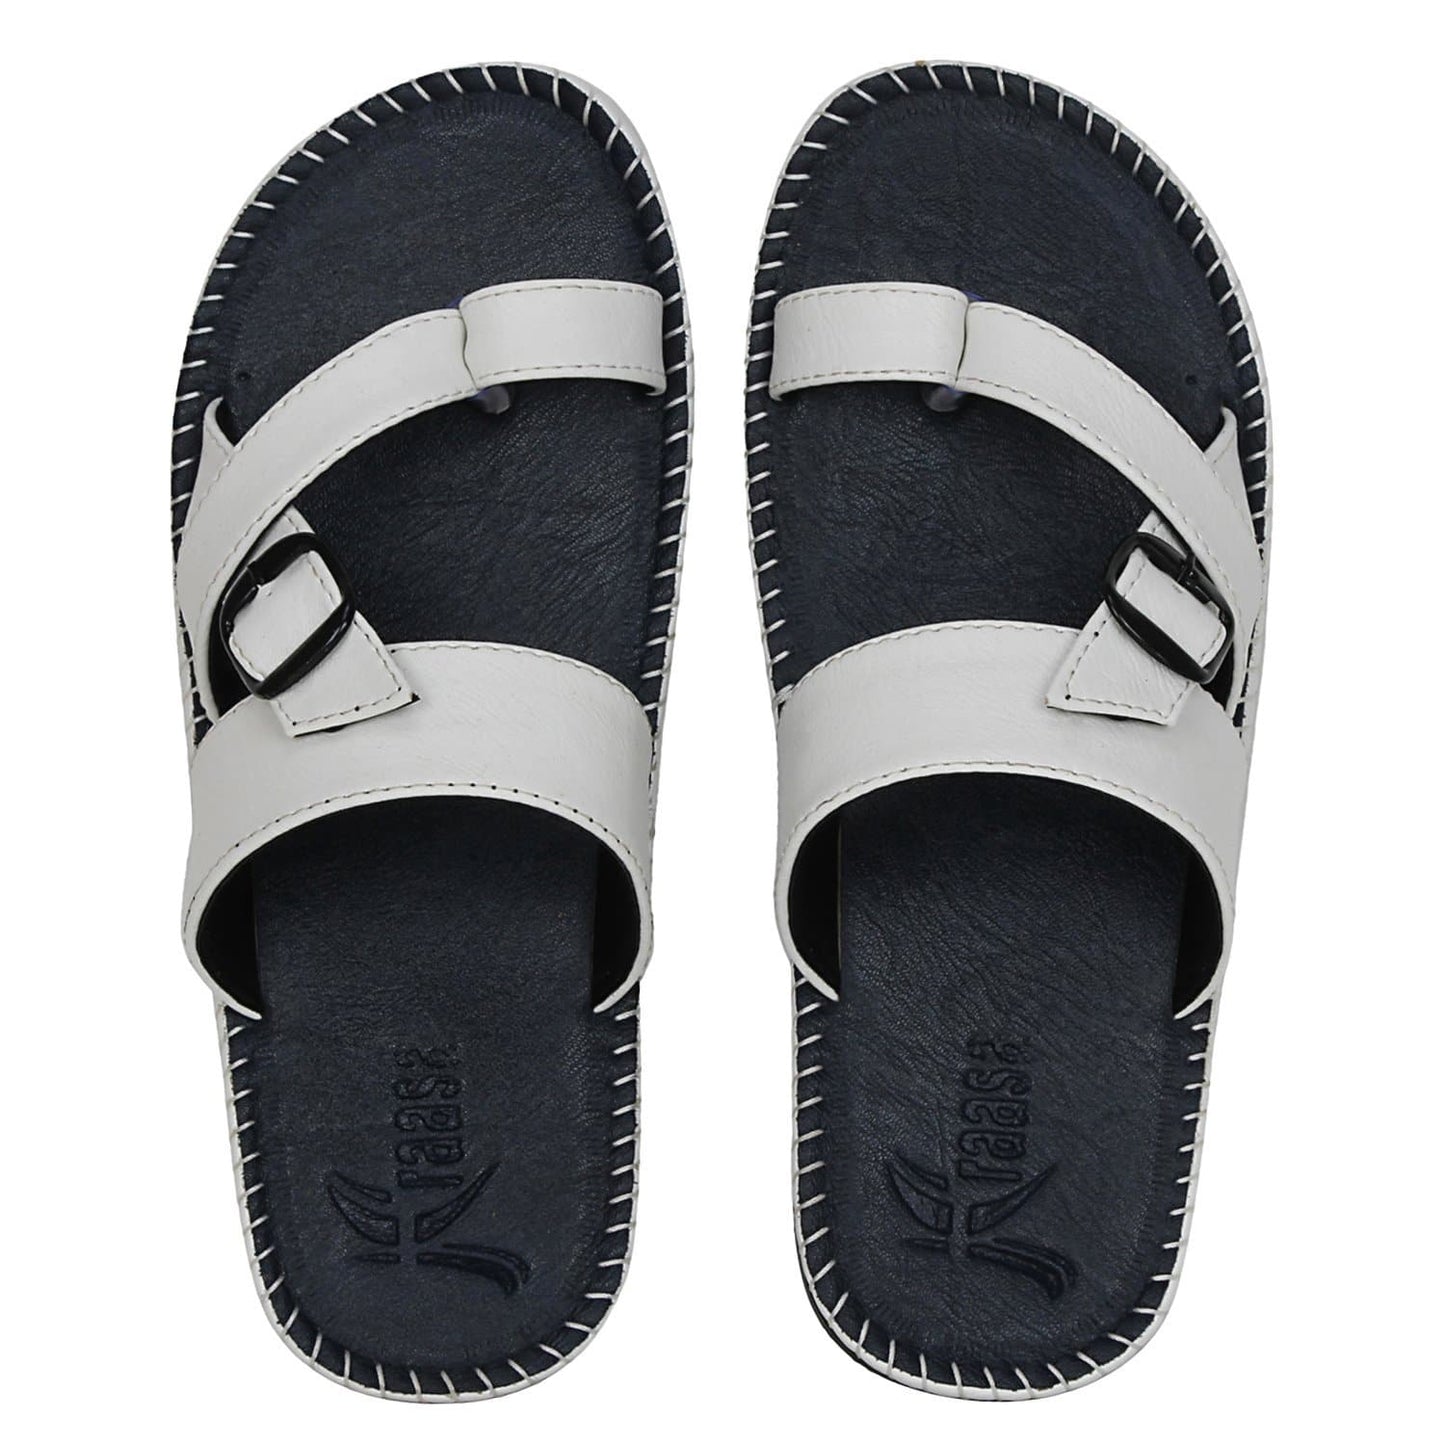 Men's Synthetic Outdoor Sandals